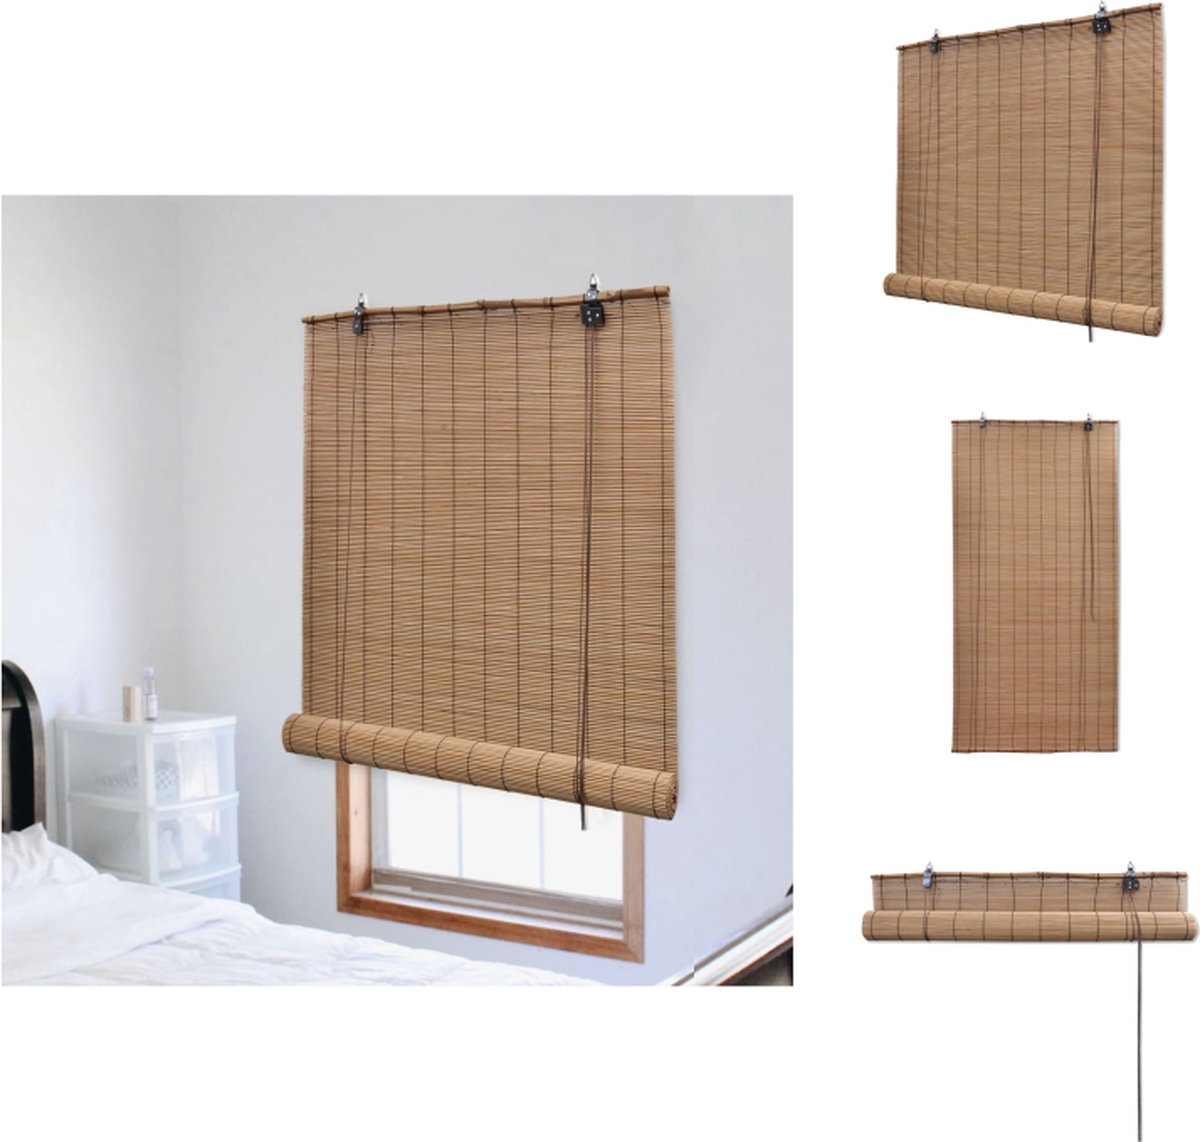 VidaXL Bamboe Rolgordijn 150 x 160 cm Privacy en lichtfilter Neutrale kleur Rolgordijn